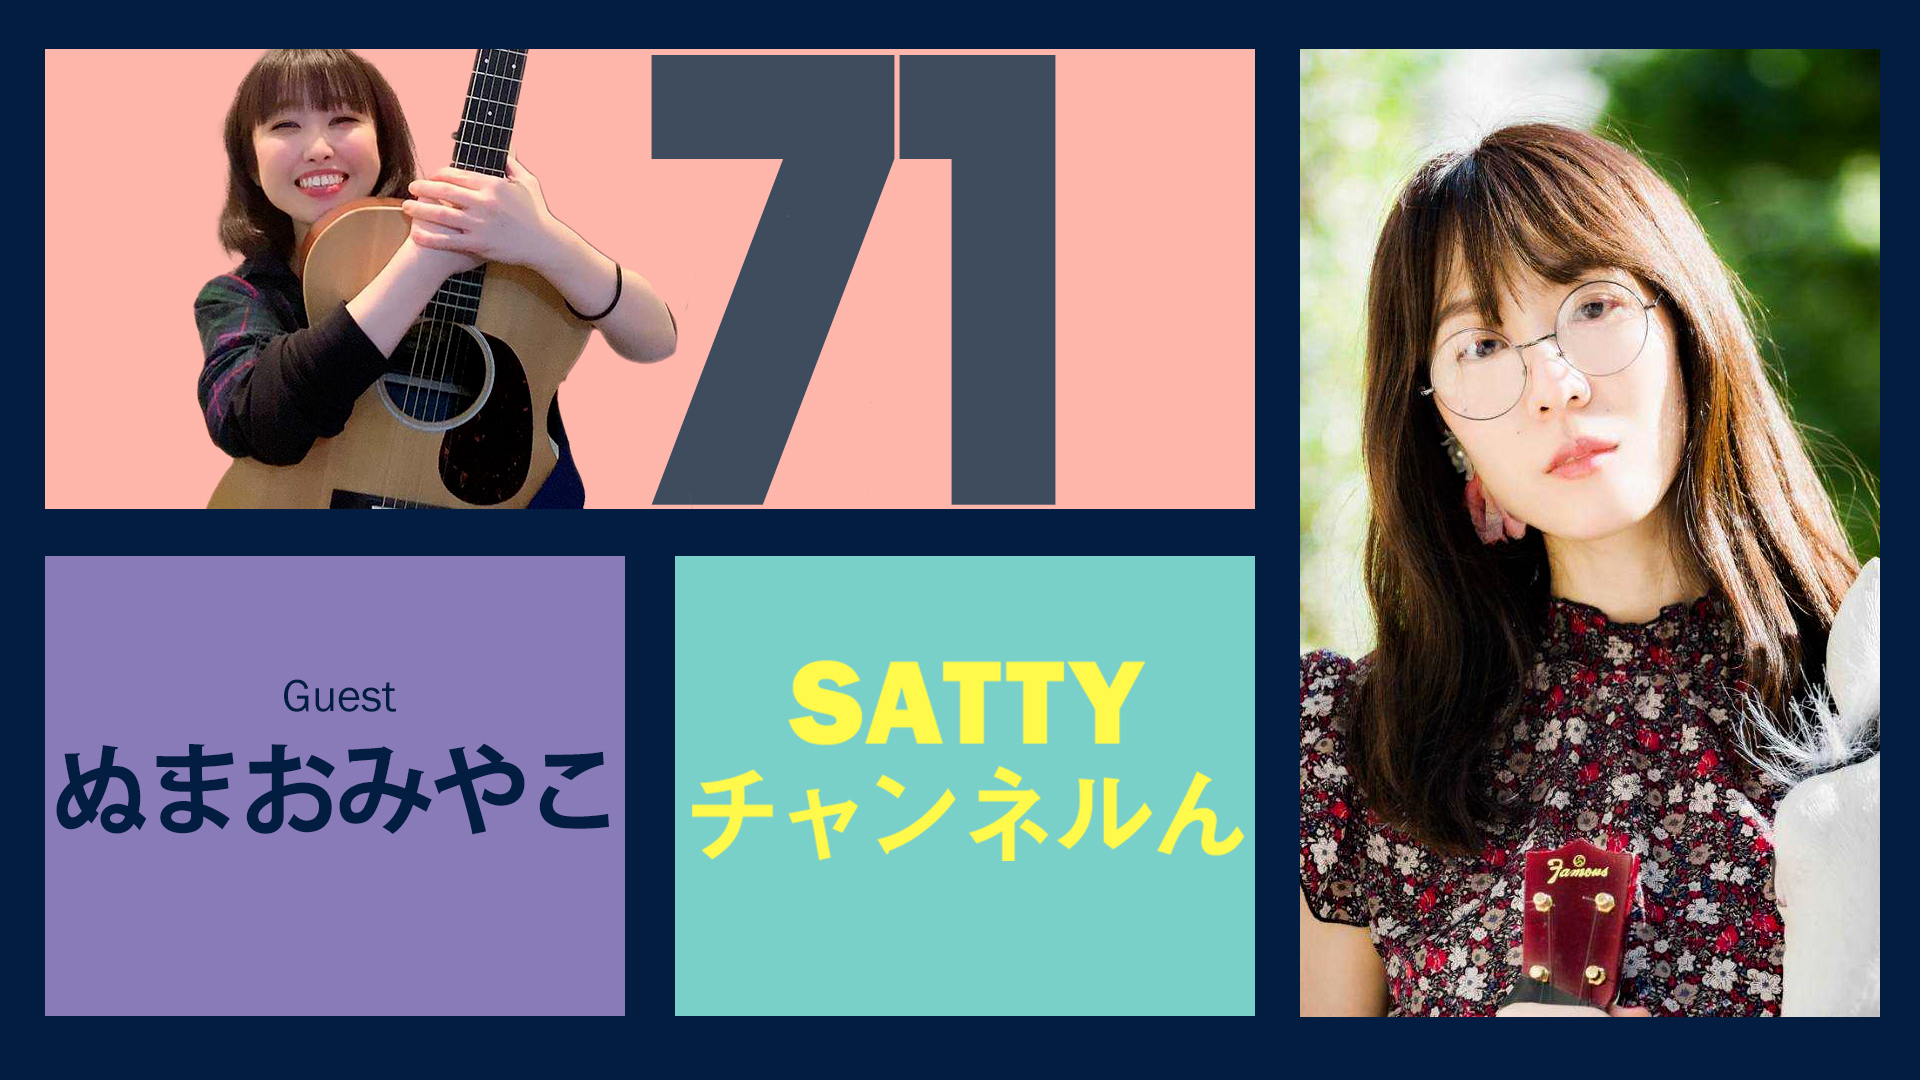 Guest ぬまおみやこさんとトーク! ラジオ「Sattyチャンネルん」#71